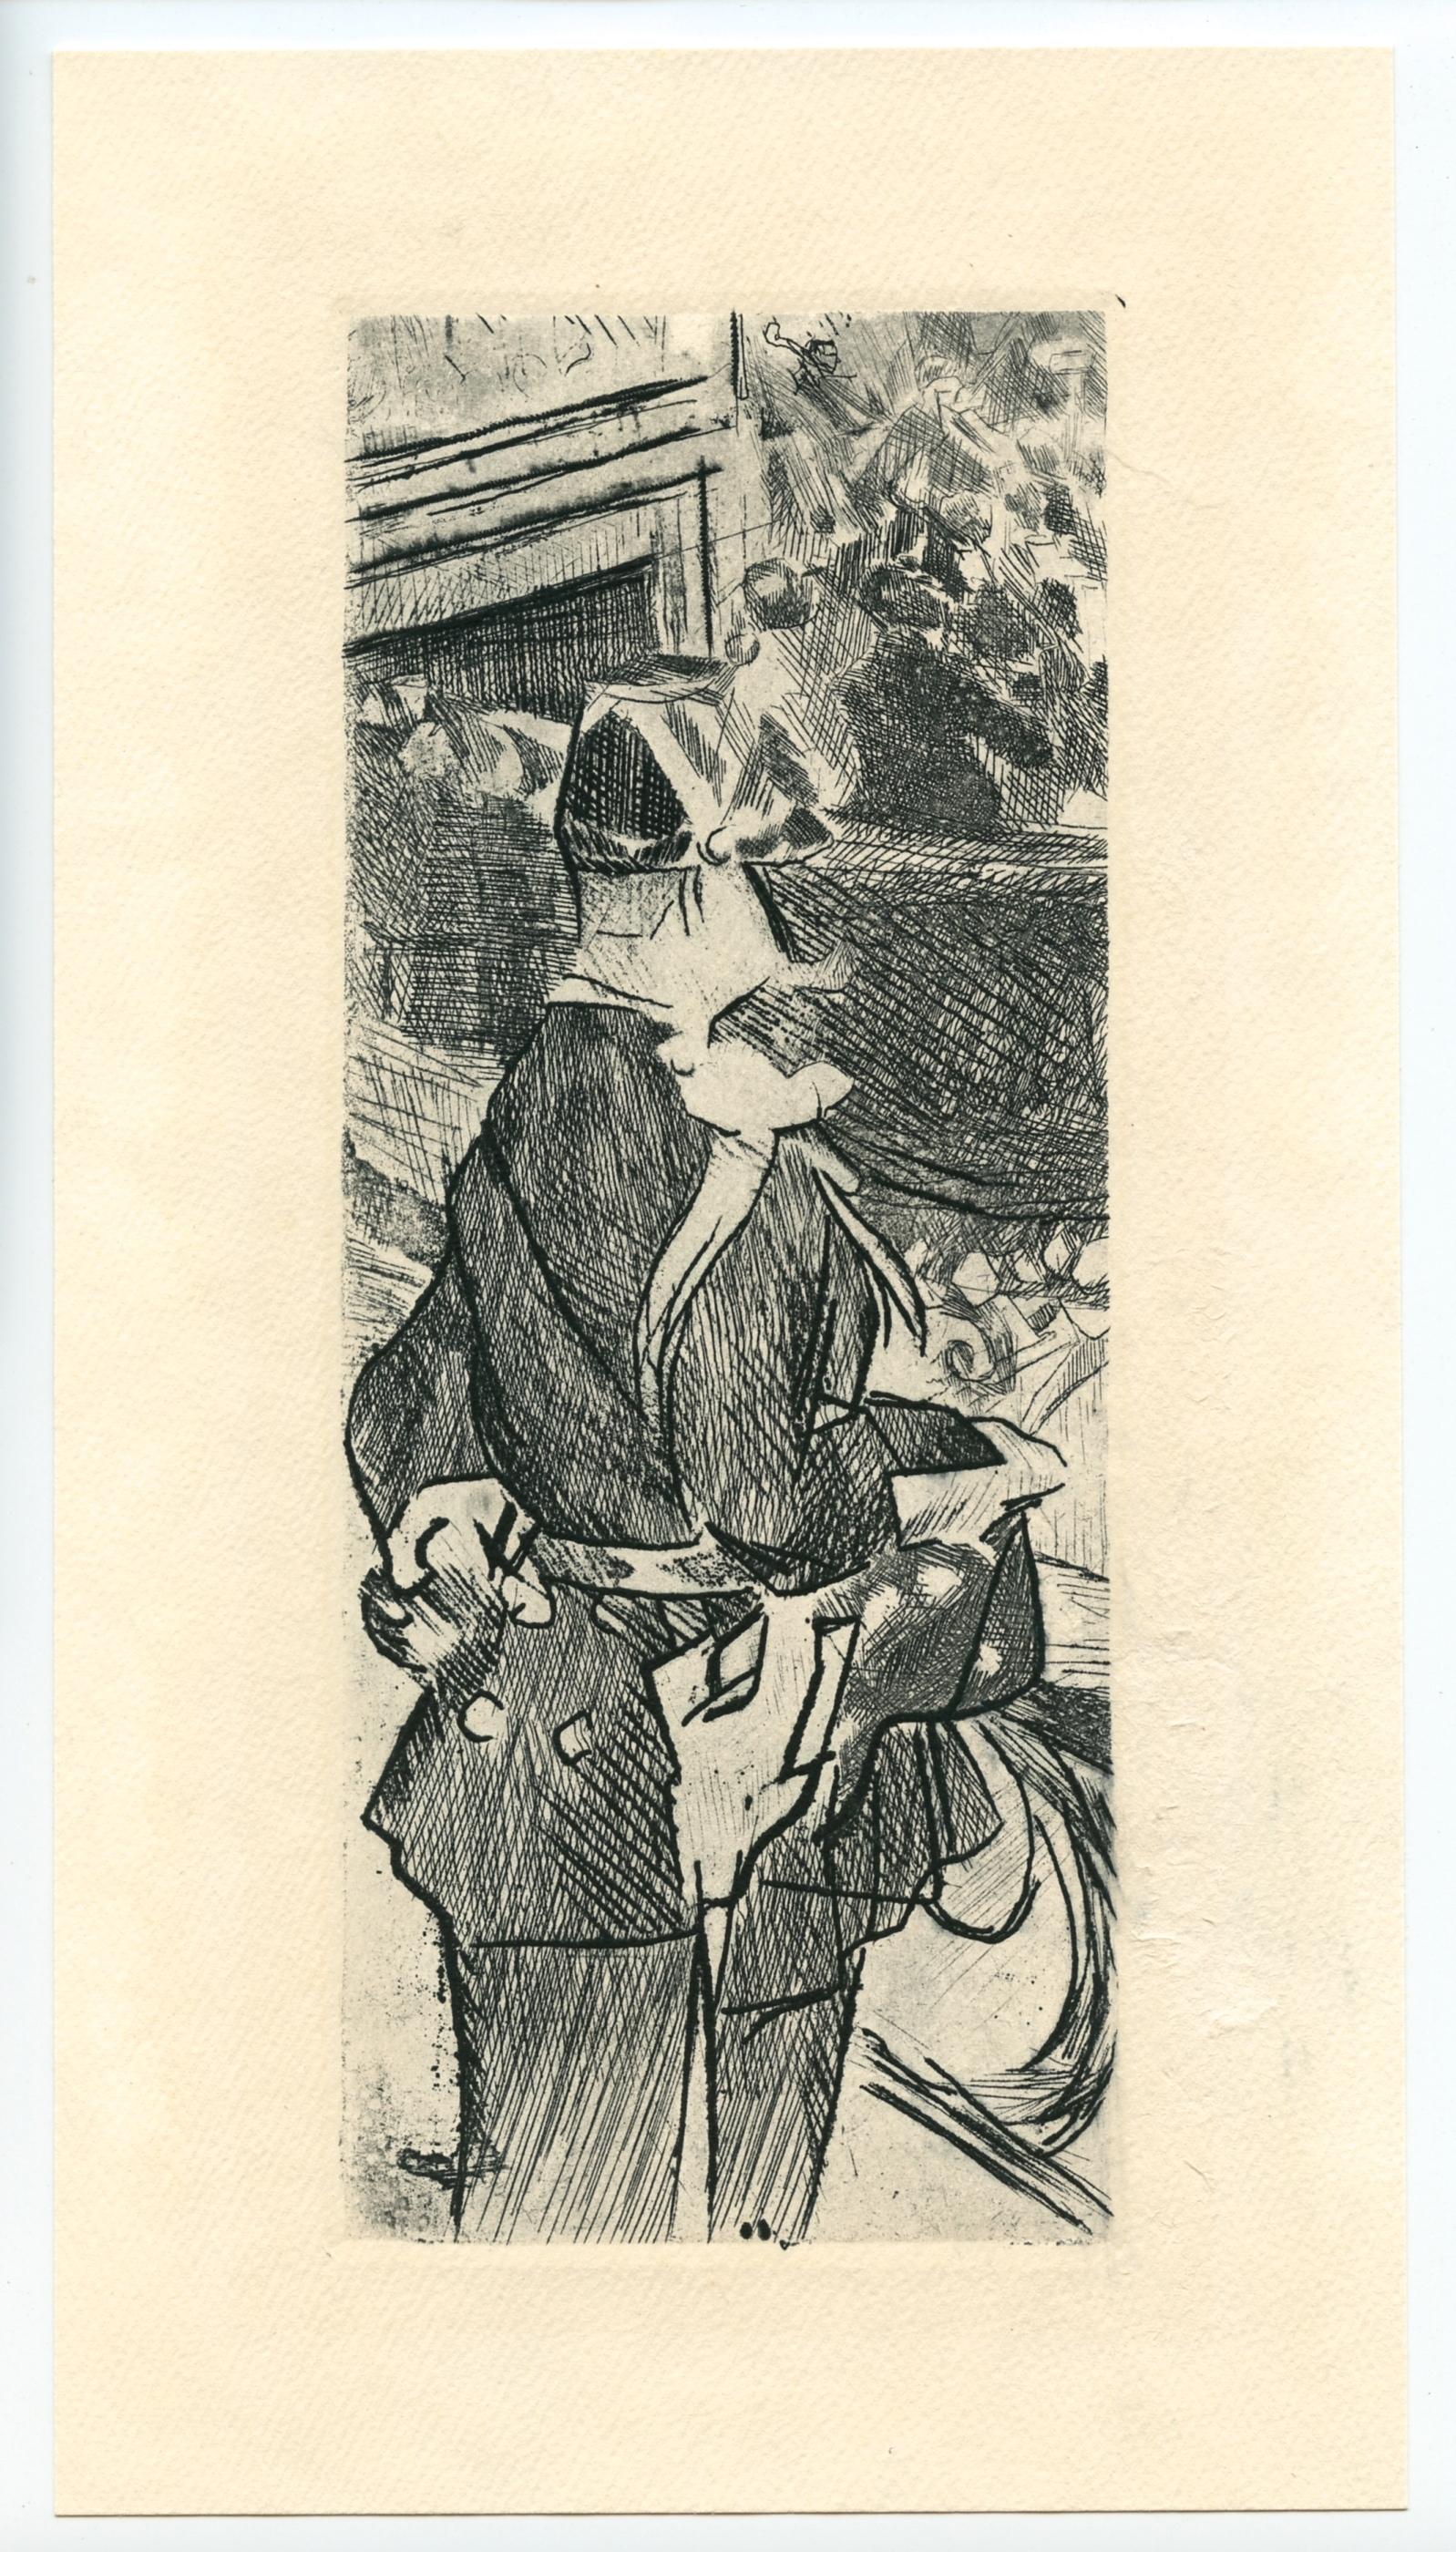 Jacques Villon Figurative Print - "Fete Champetre" original etching